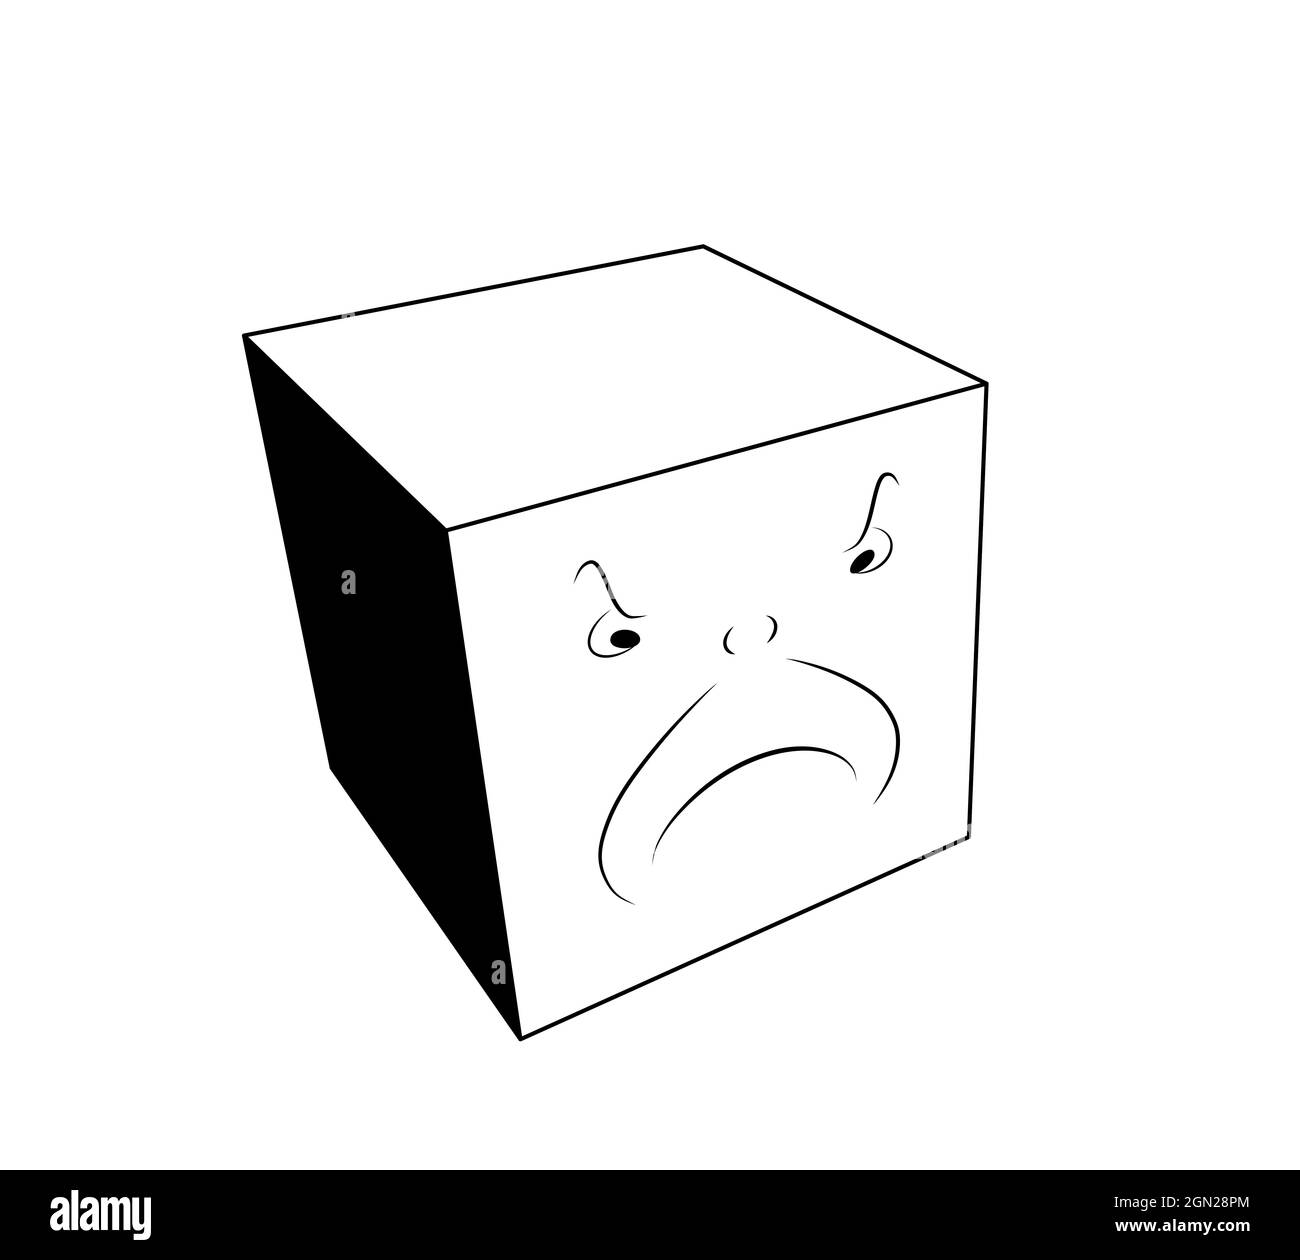 emozioni e sentimenti di base per i bambini, rabbia. nero e bianco cartoon faccia arrabbiata. immagine cubica 3d isolata su sfondo bianco Foto Stock